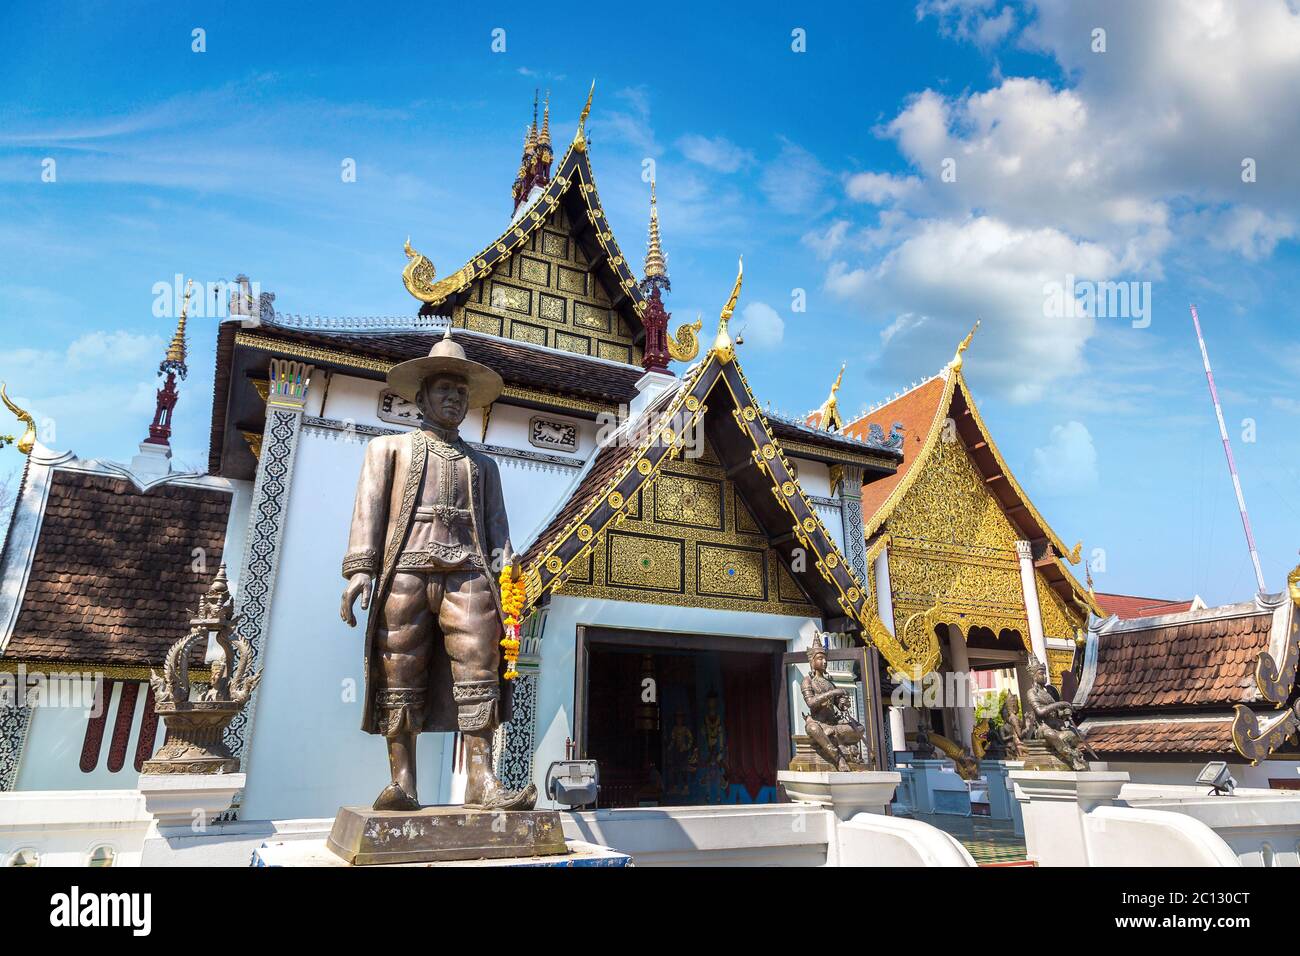 Wat Phra Singh - Tempio buddista a Chiang mai, Thailandia in una giornata estiva Foto Stock